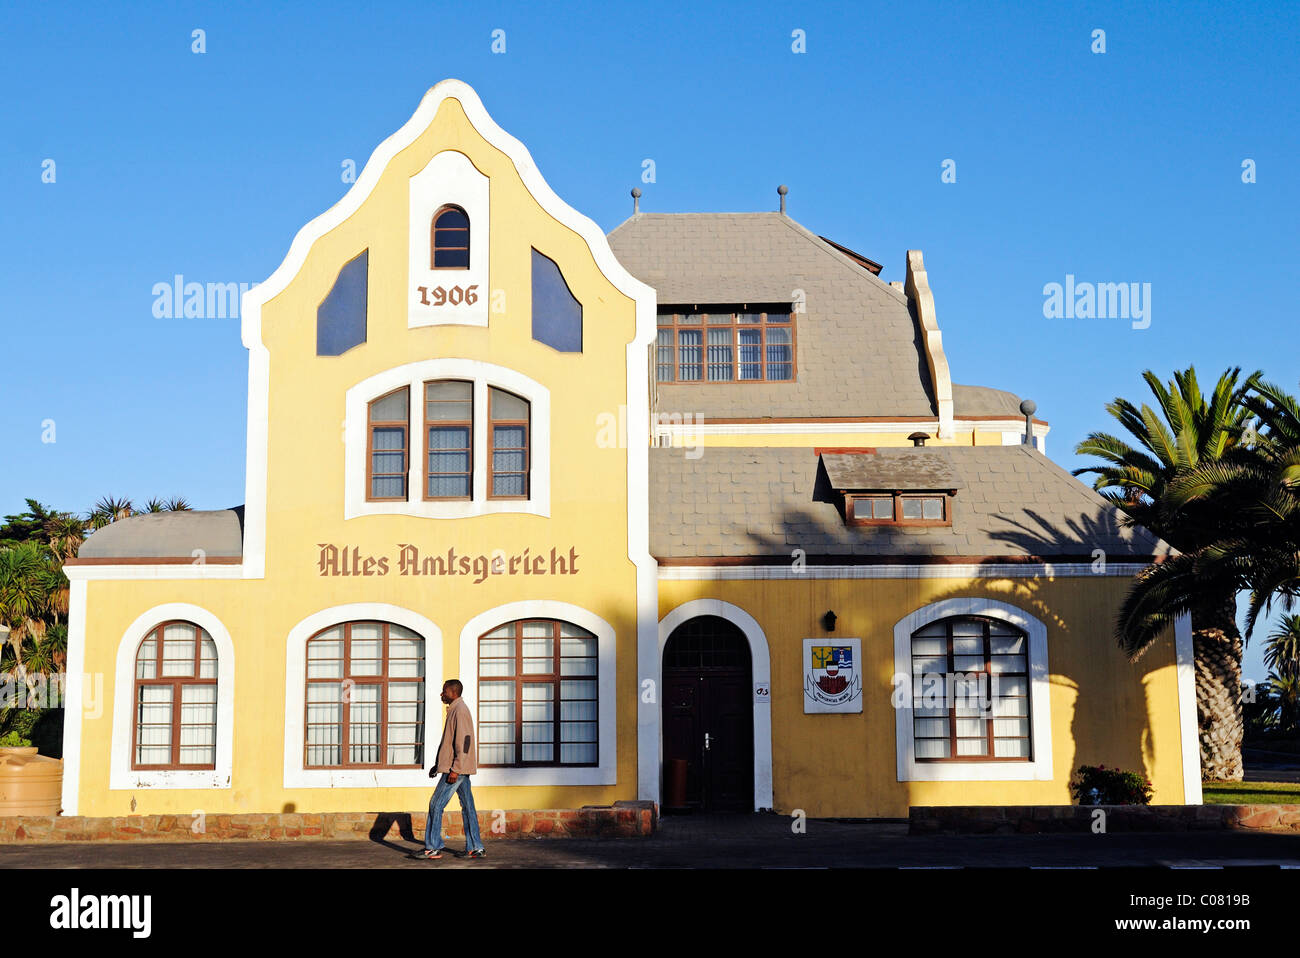 Altes Amtsgericht di edificio, architettura costruita durante il tedesco periodo coloniale, Swakopmund, Namibia, Africa Foto Stock